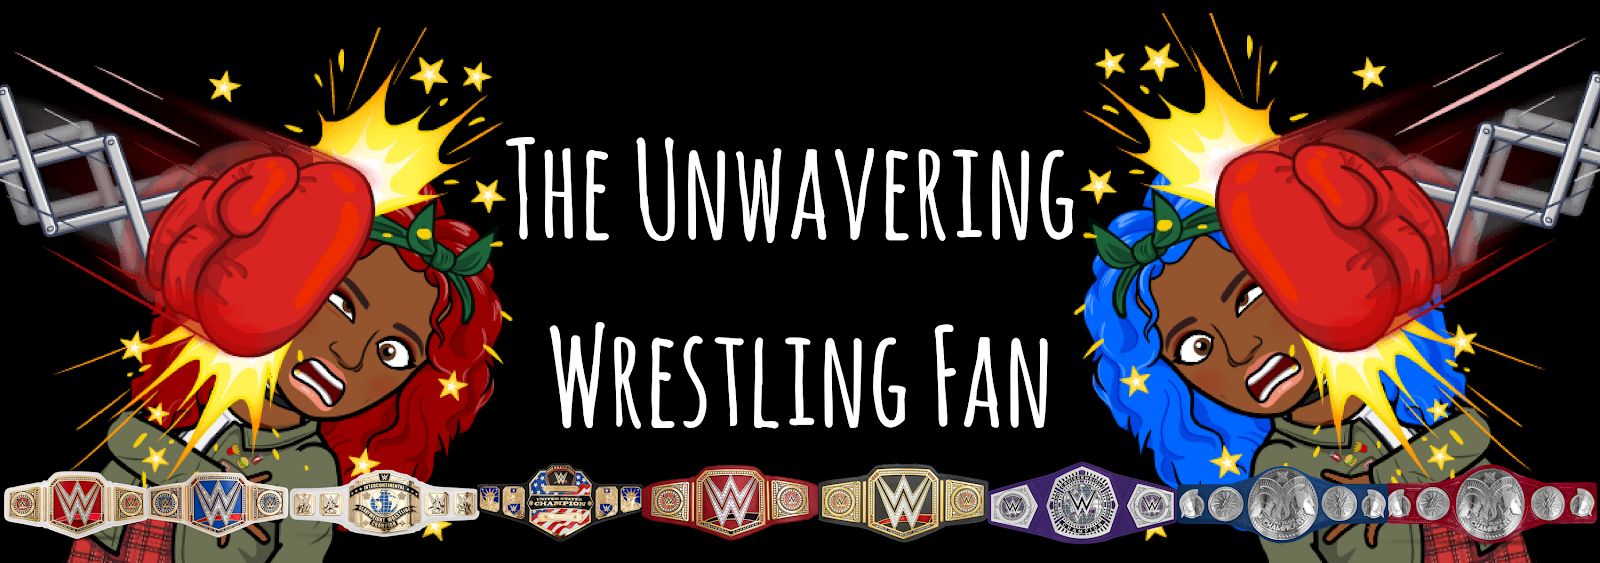 The Unwavering Wrestling Fan